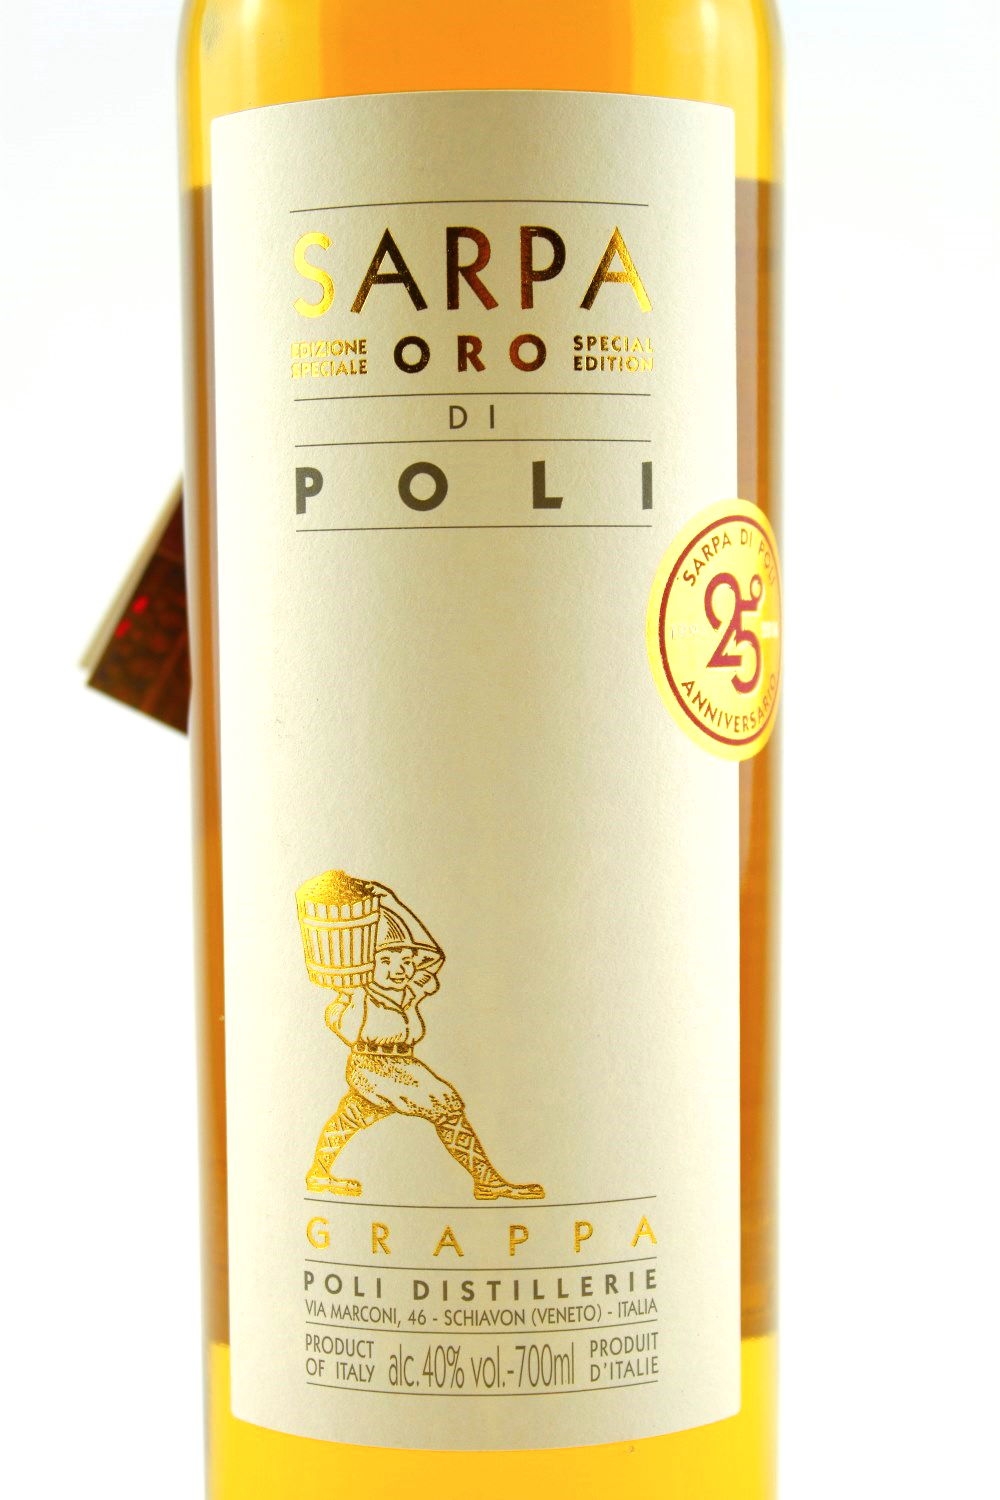 Grappa Sarpa Oro di Poli 40% vol. Poli Jacopo 1898 Distillery